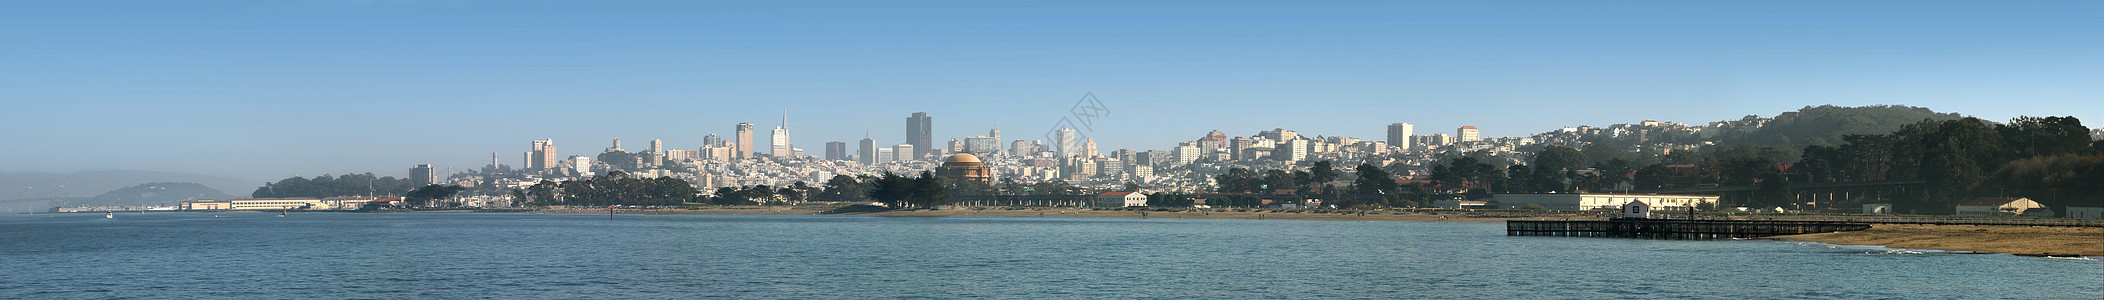 旧金山全景 从宝藏岛到公园普里西迪奥图片